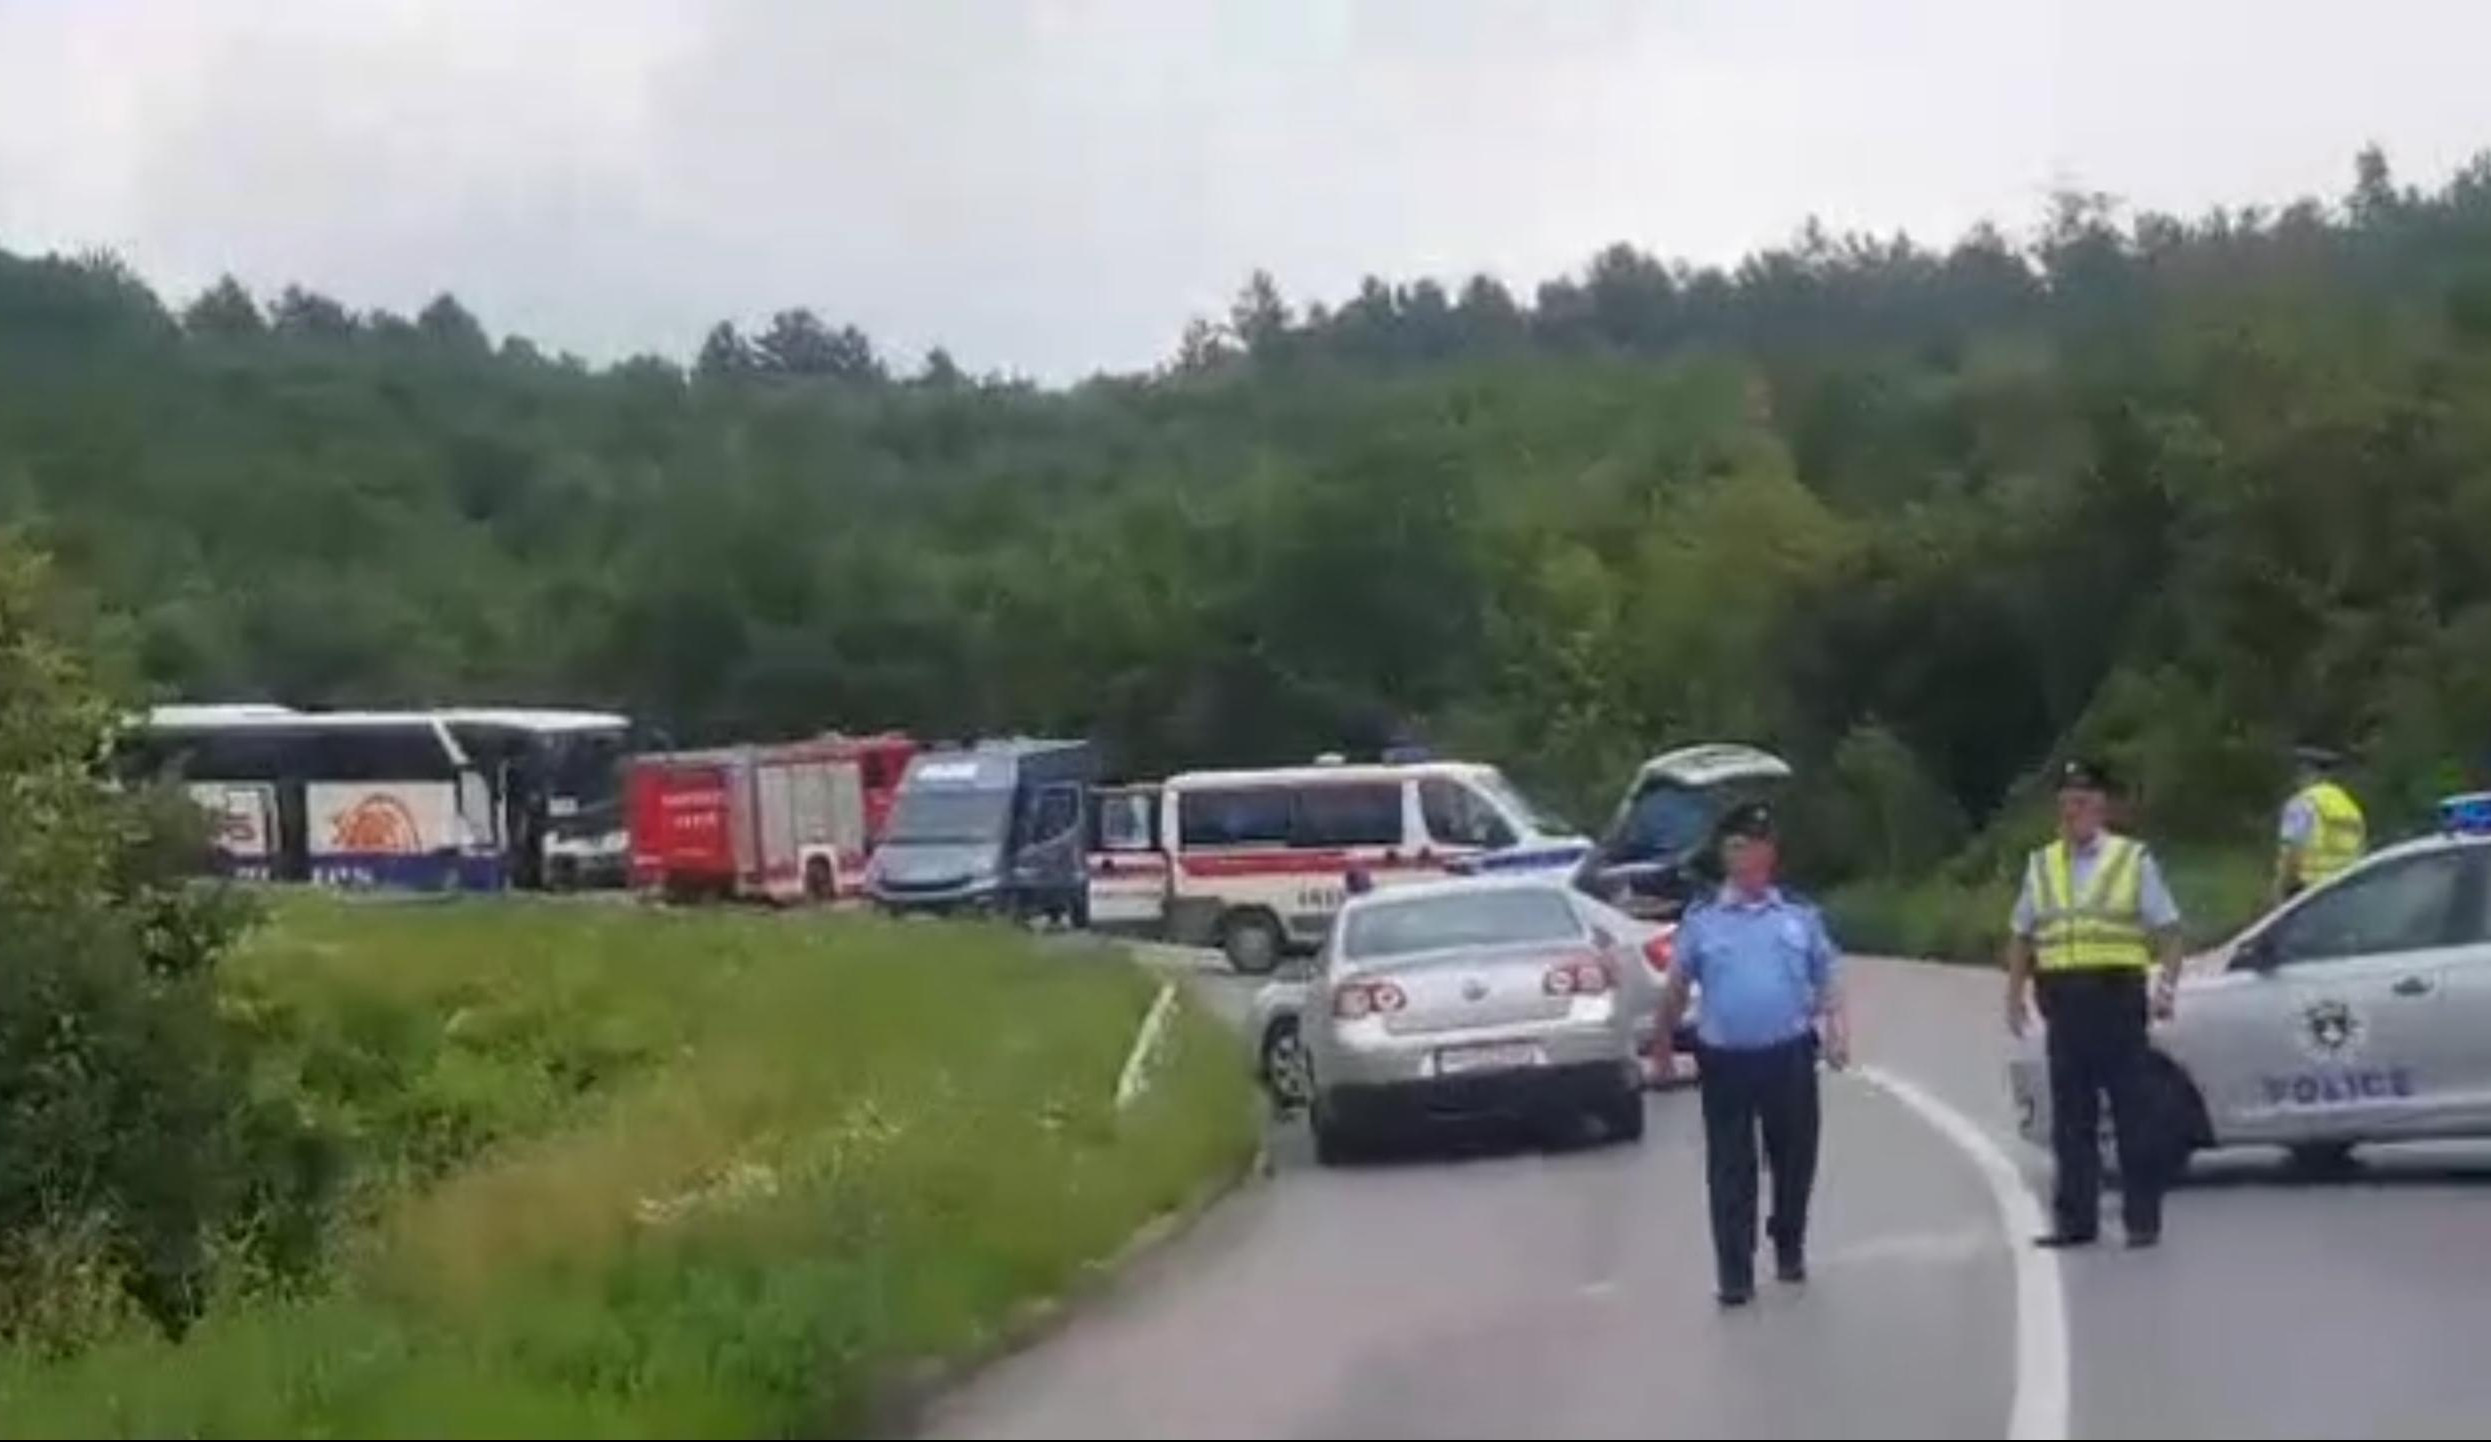 (FOTO) TRAGEDIJA NA KOSOVU! POGINULA CELA PORODICA! Troje dece i roditelji stradali u sudaru autobusa i BMW-a!